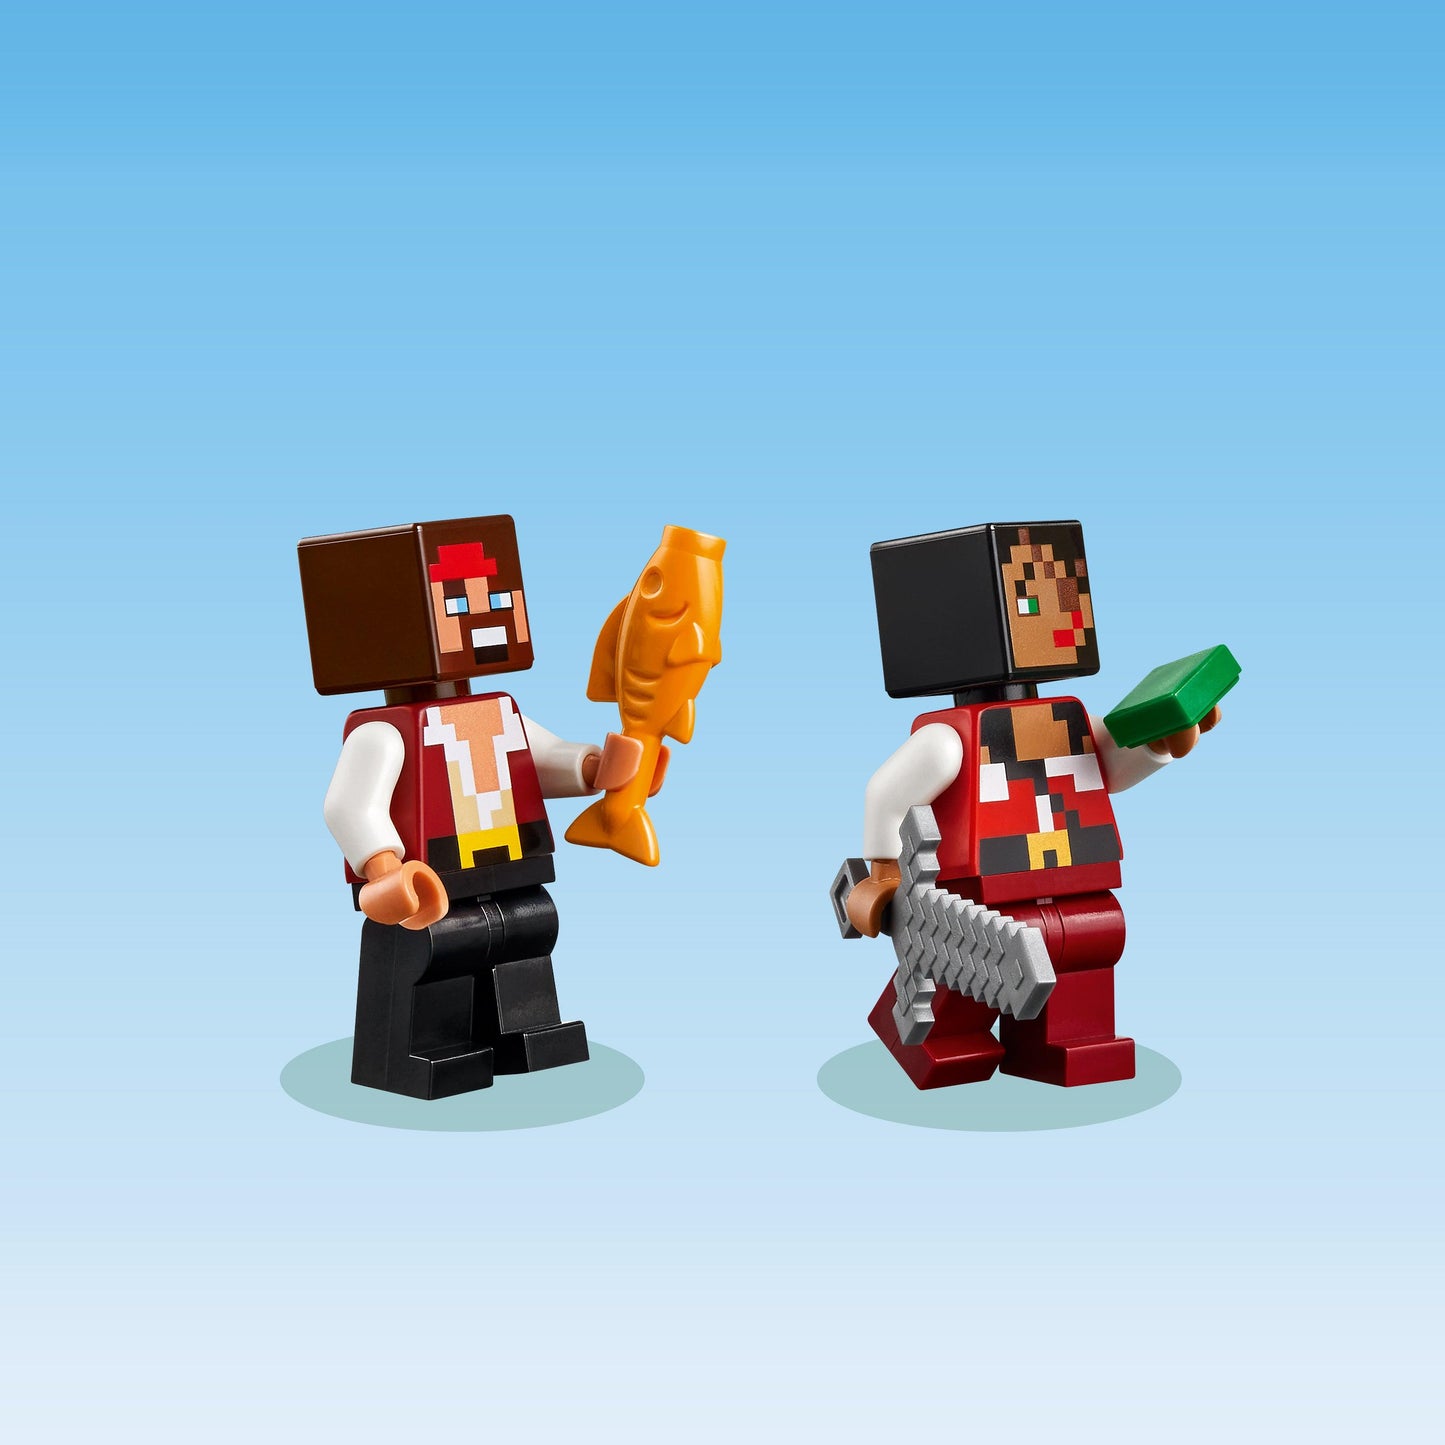 LEGO De Piratenschipreis - Zeil het avontuur tegemoet 21259 Minecraft (Pre-Order: verwacht juni) LEGO MINECRAFT @ 2TTOYS LEGO €. 12.49